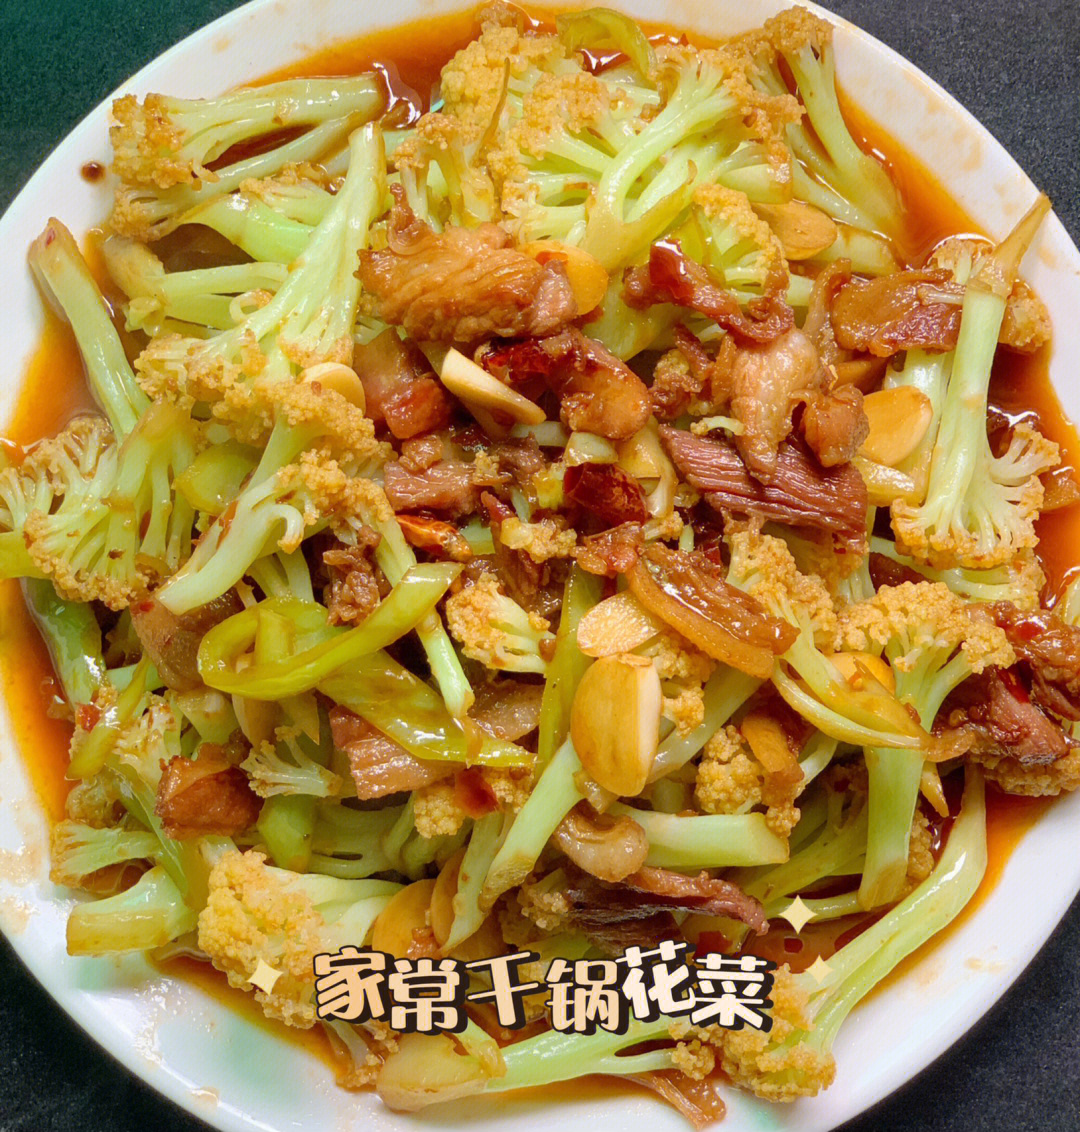 家常版干锅花菜,做法简单,好吃还下饭